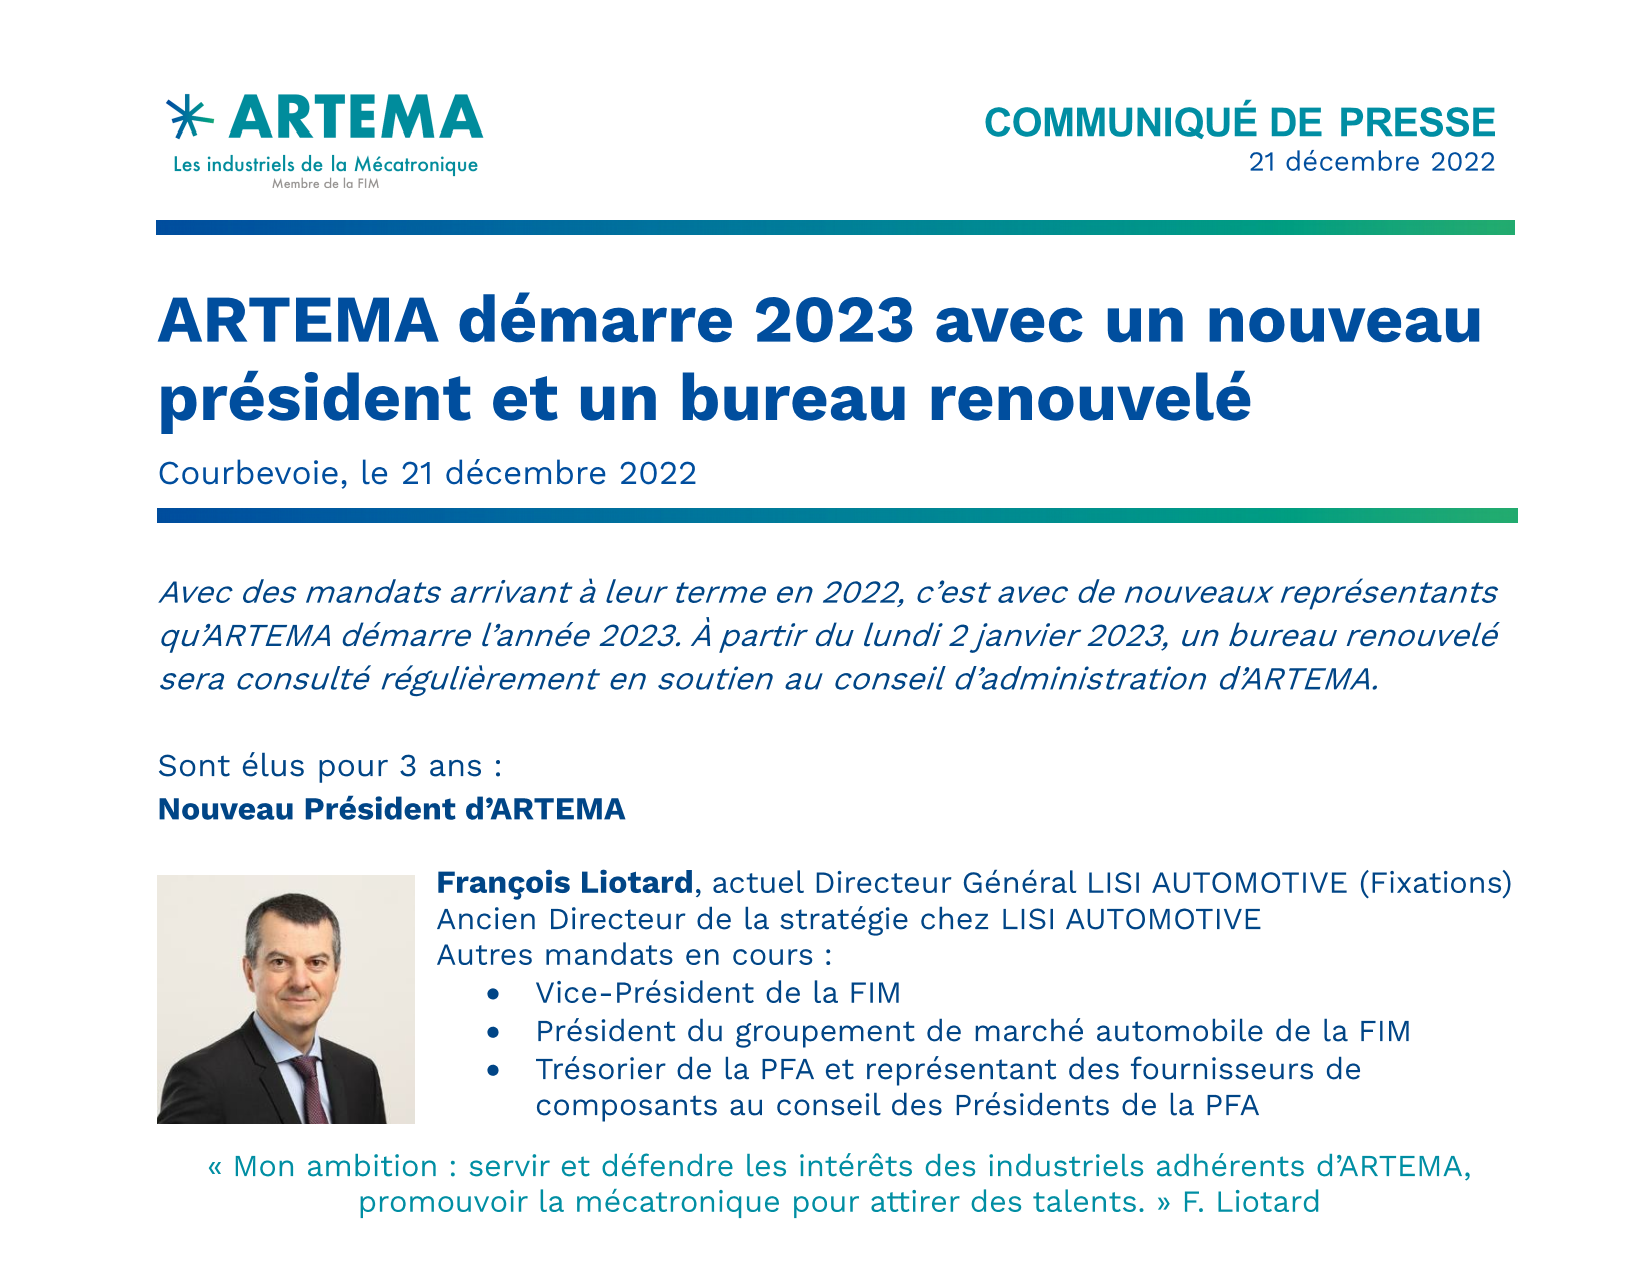 ARTEMA démarre 2023 avec un nouveau président et un bureau renouvelé